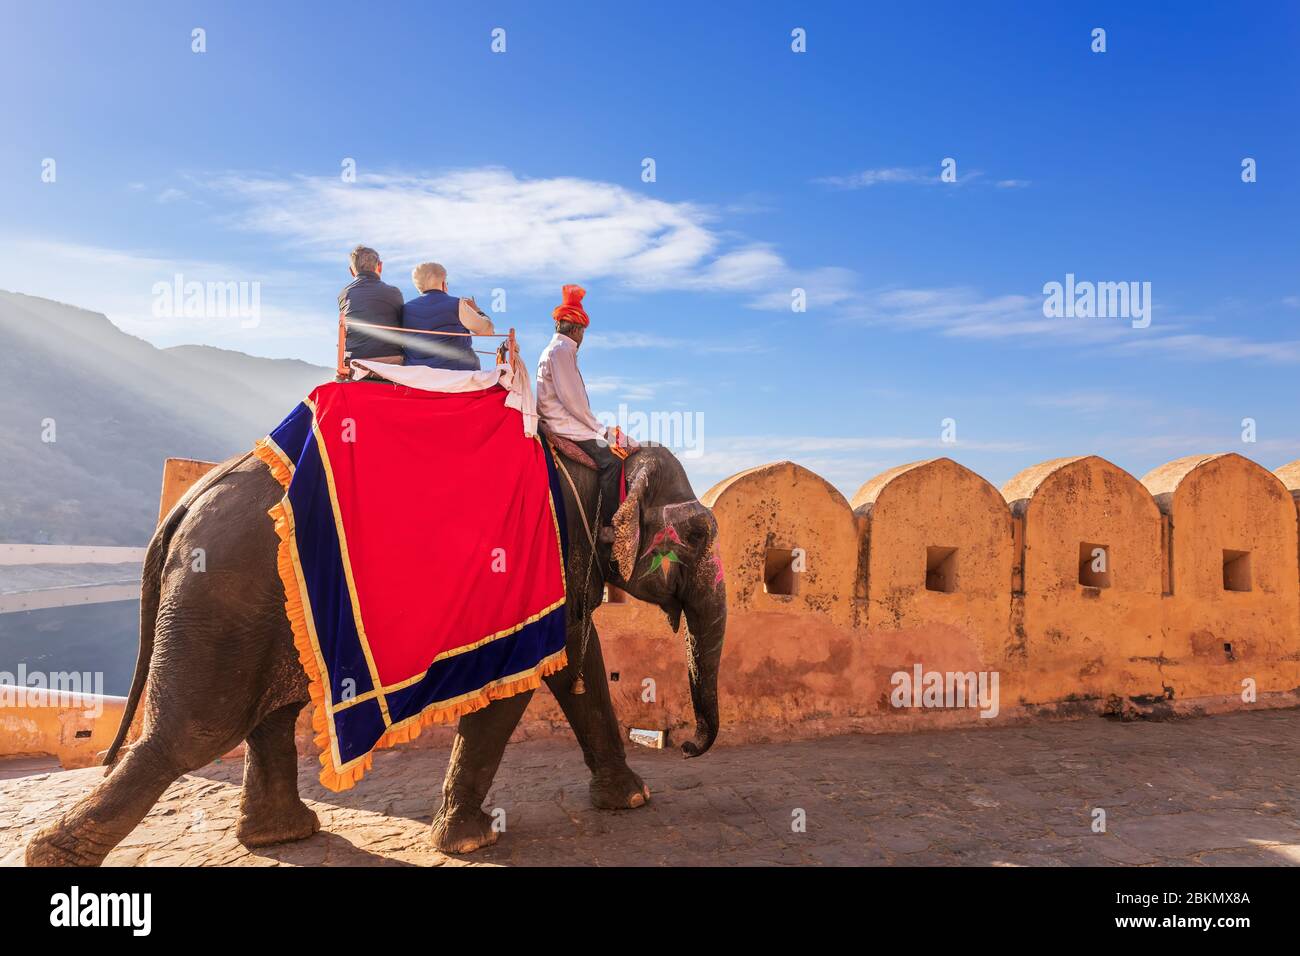 Équitation sur les elekats, célèbre attraction touristique dans le fort d'Amber de Jaipur, Inde Banque D'Images